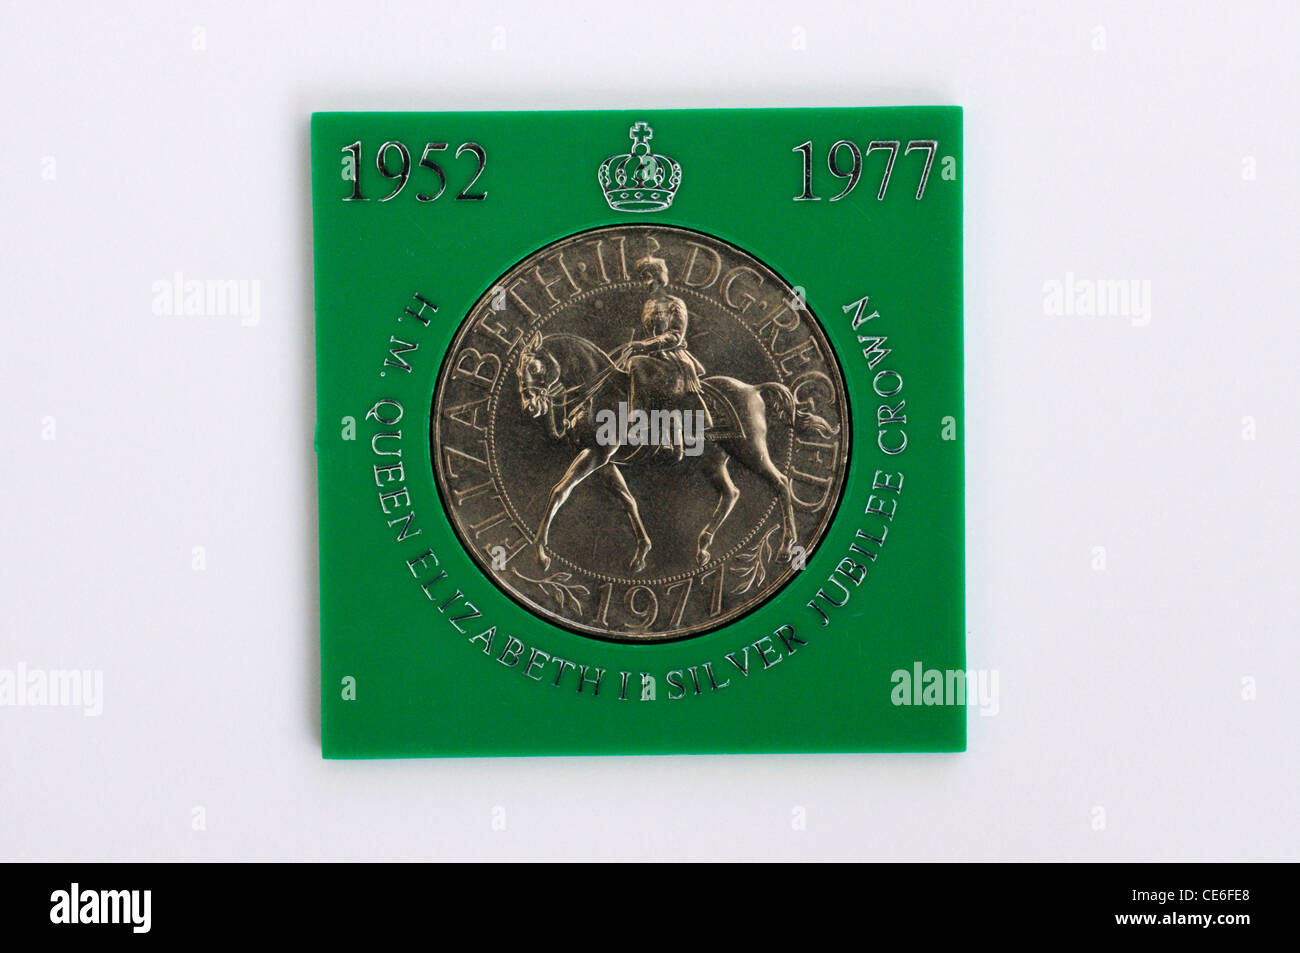 Queen Elizabeth II Queen Elizabeth II Silver Jubilee Commemorative Crown Coin Stock Photo